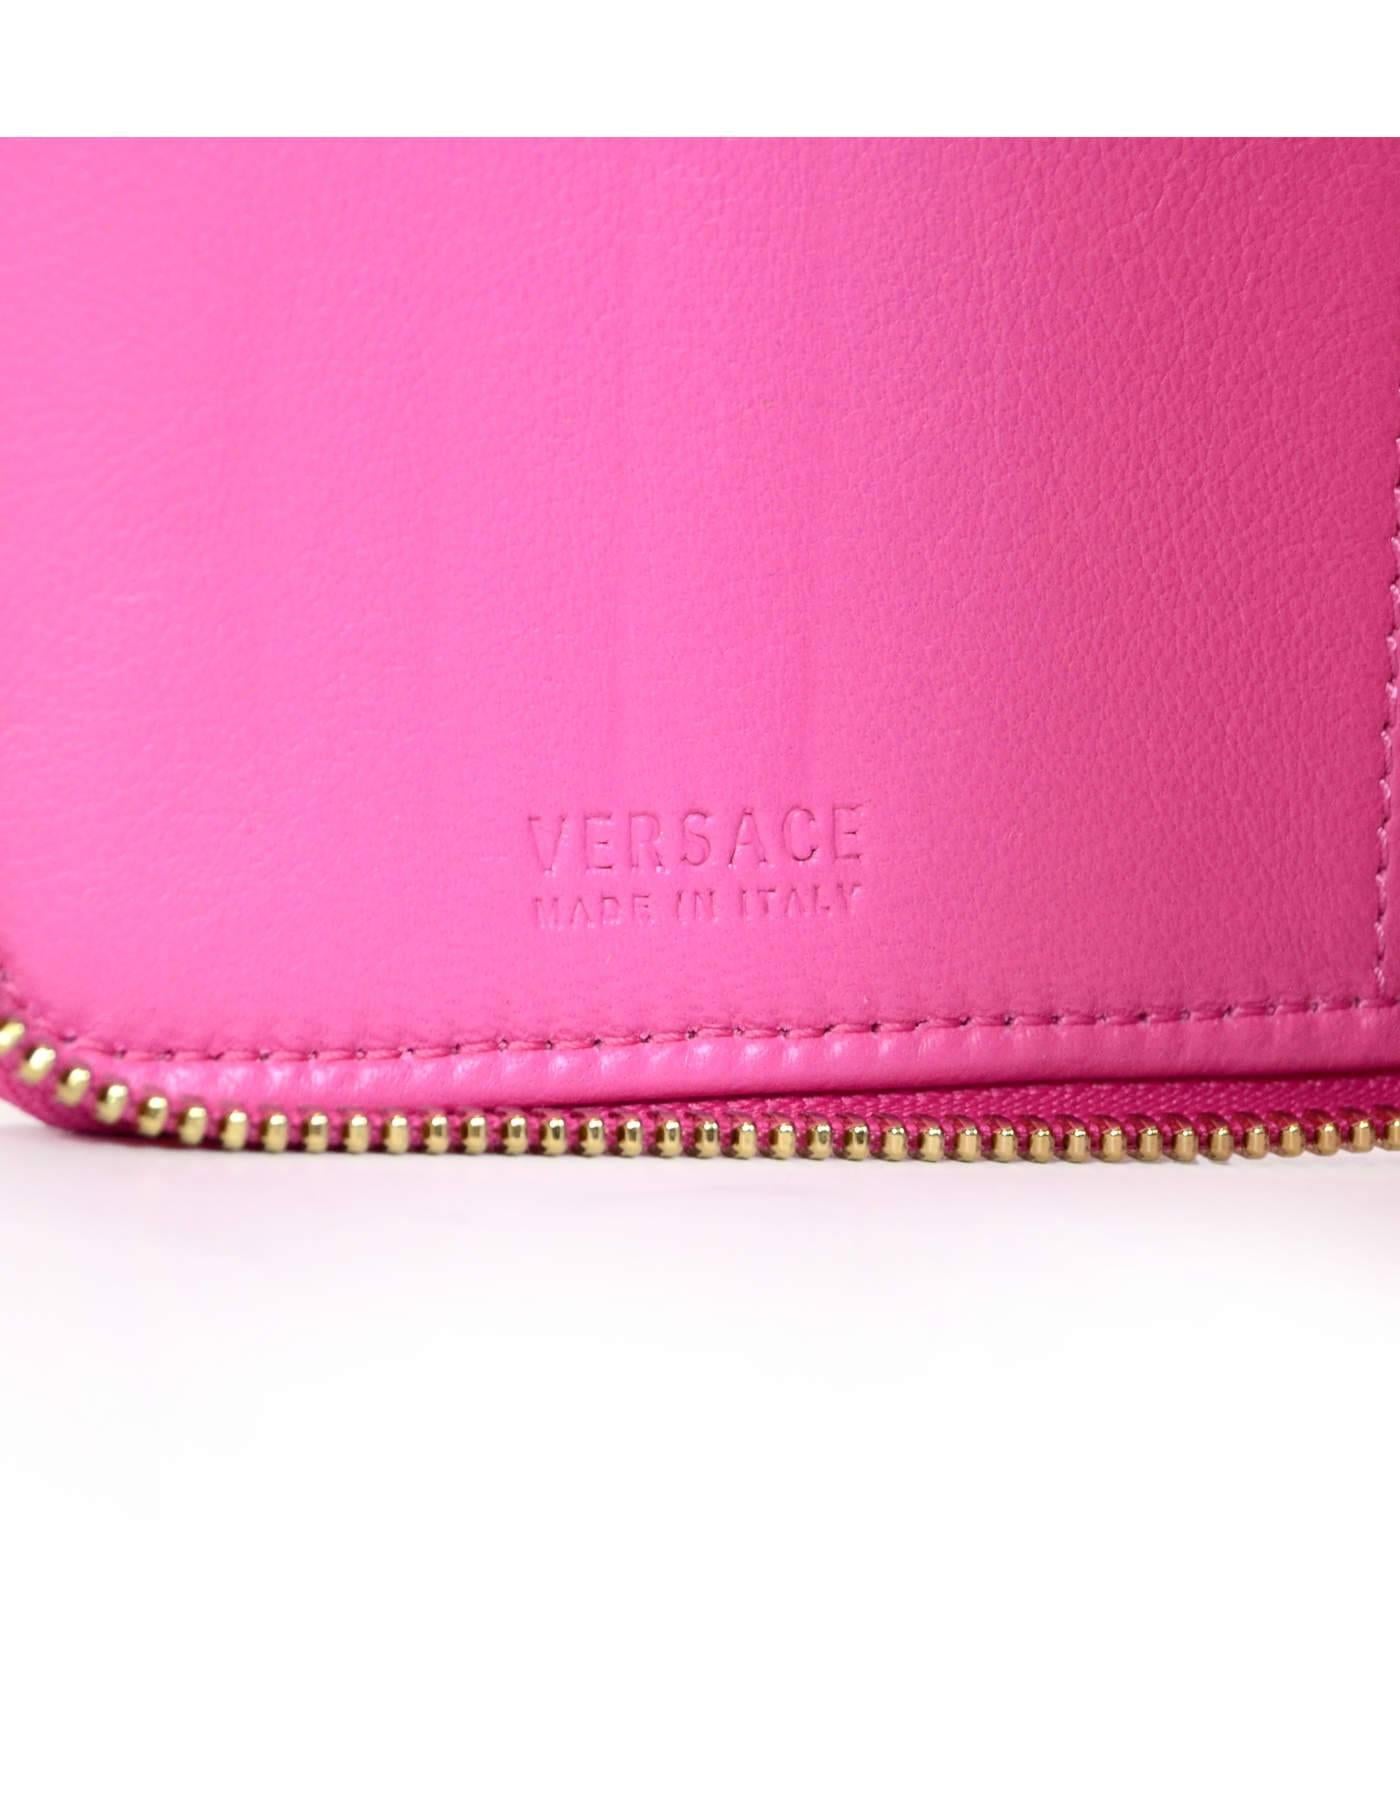 Versace Pink Leather Zip Around XL Wallet NIB  3